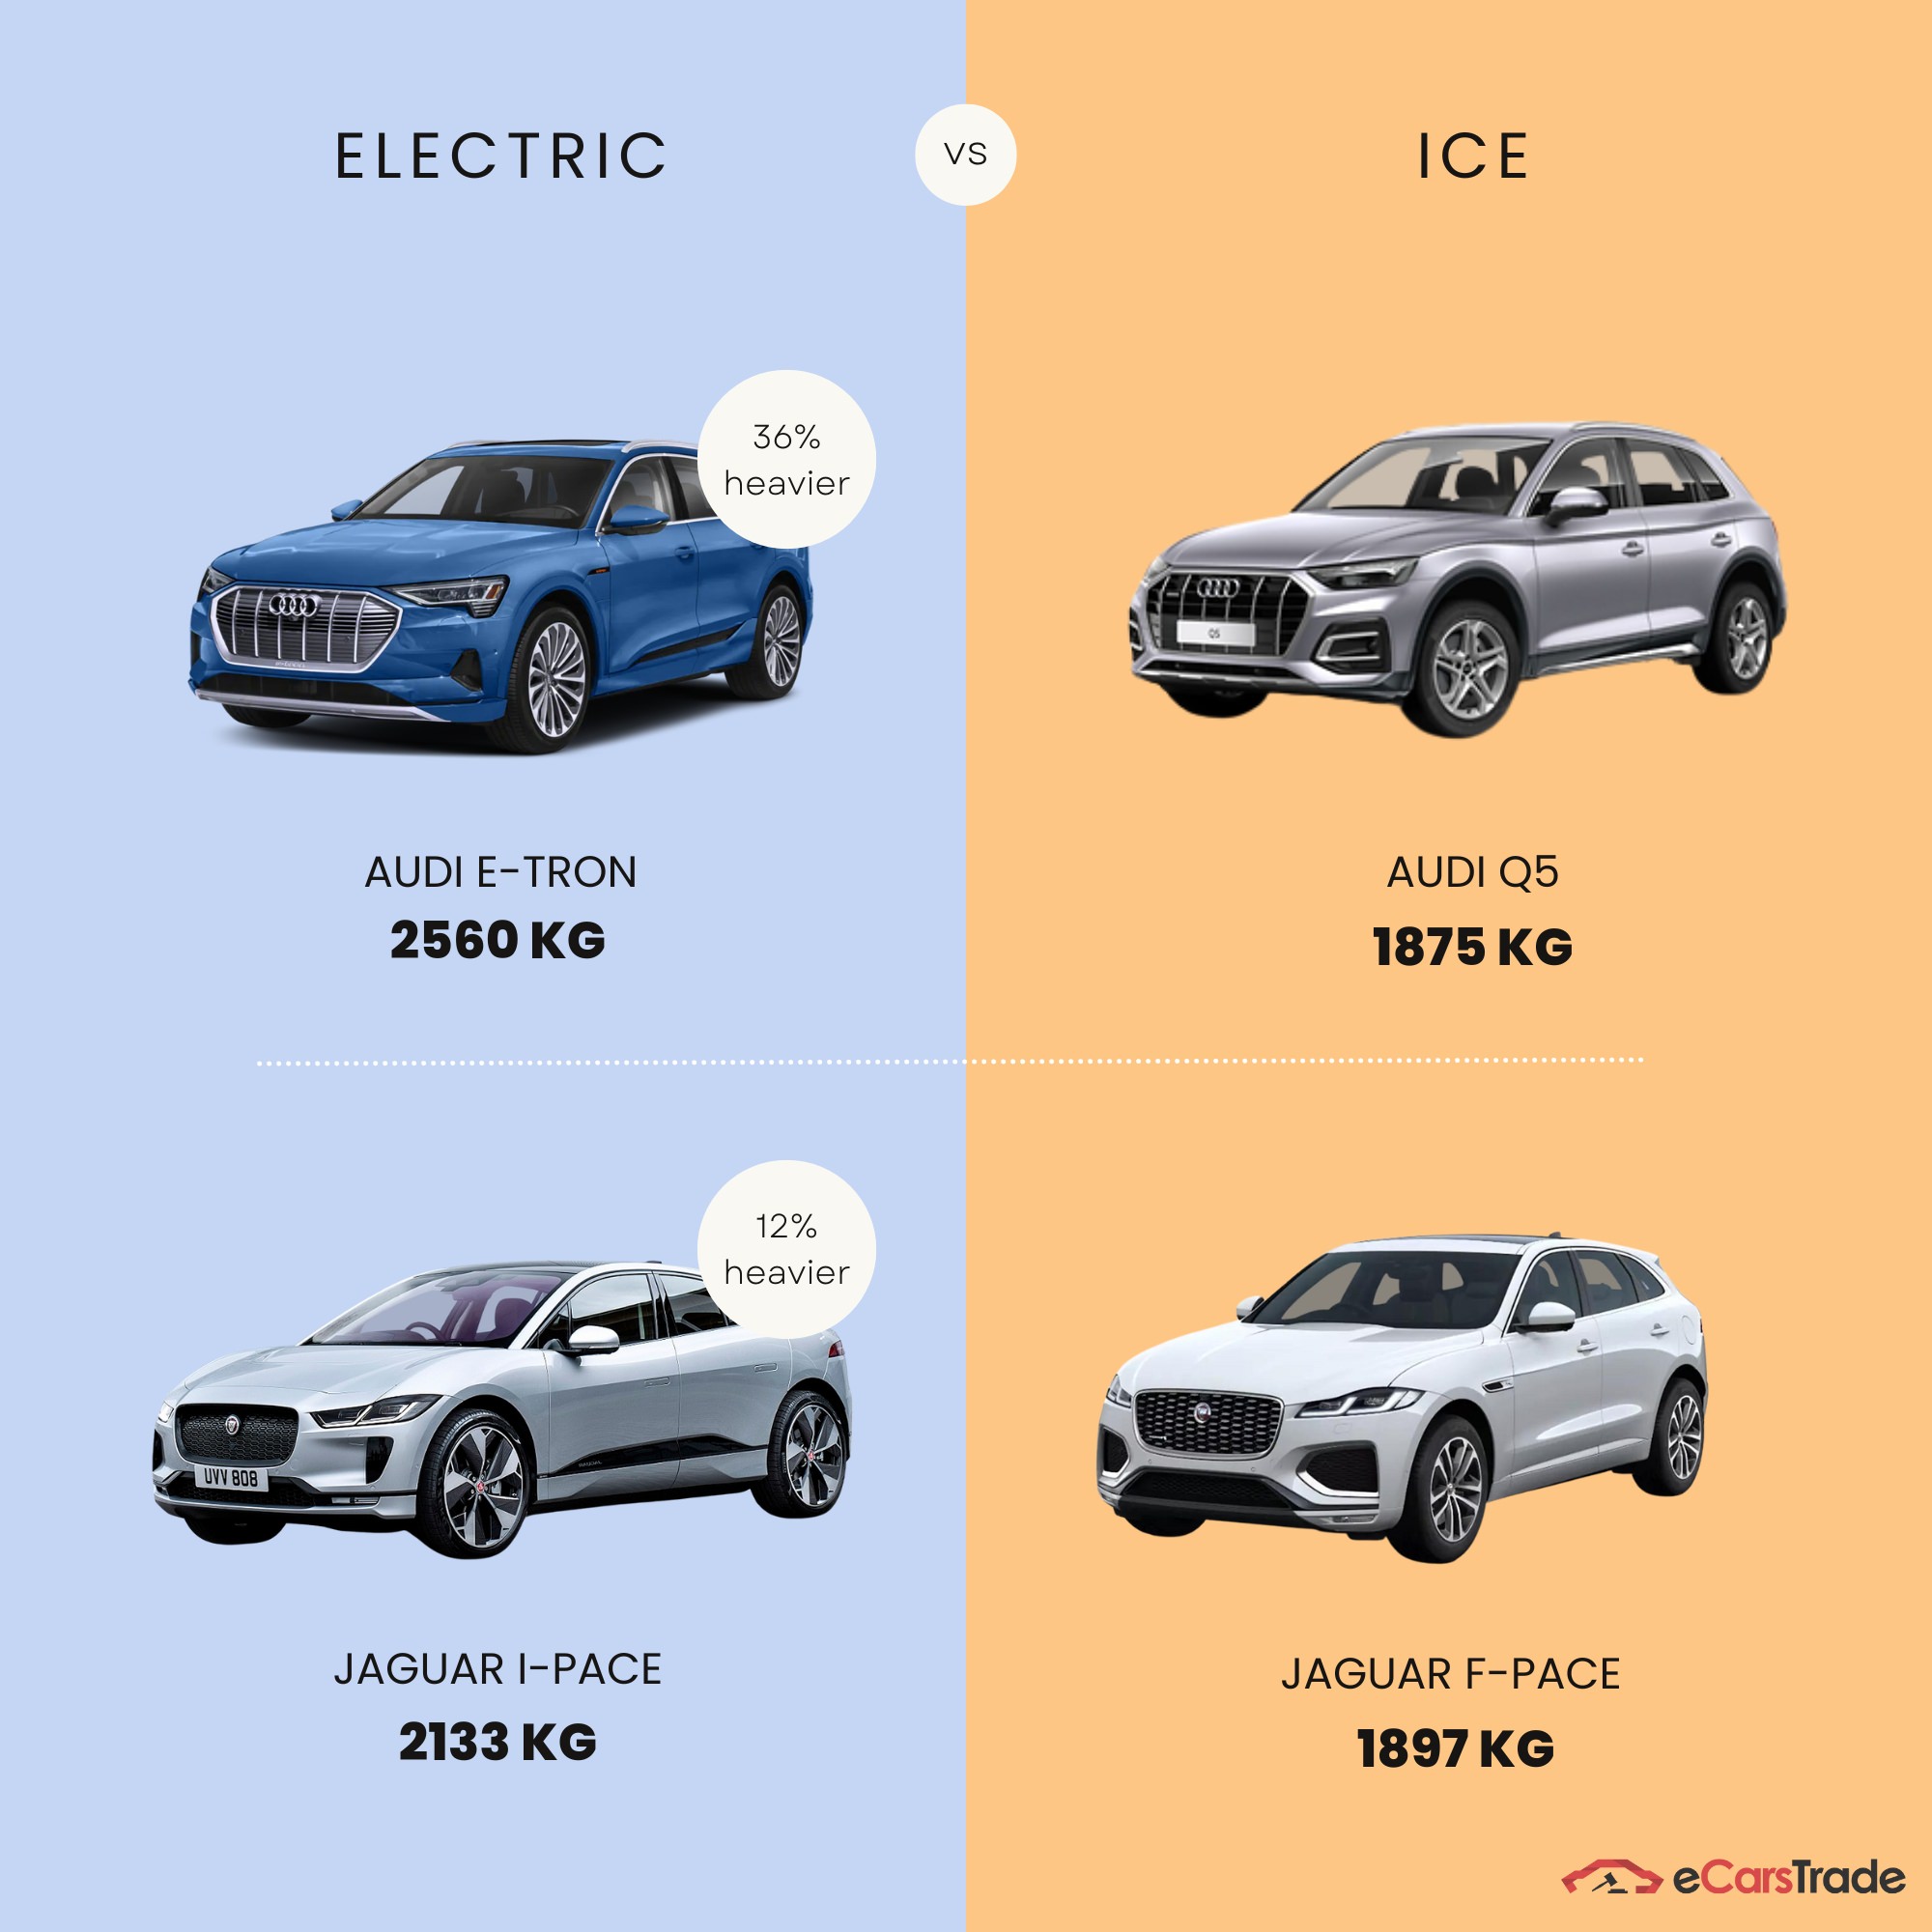 инфографика која приказује разлику у тежини између електричних и ИЦЕ возила